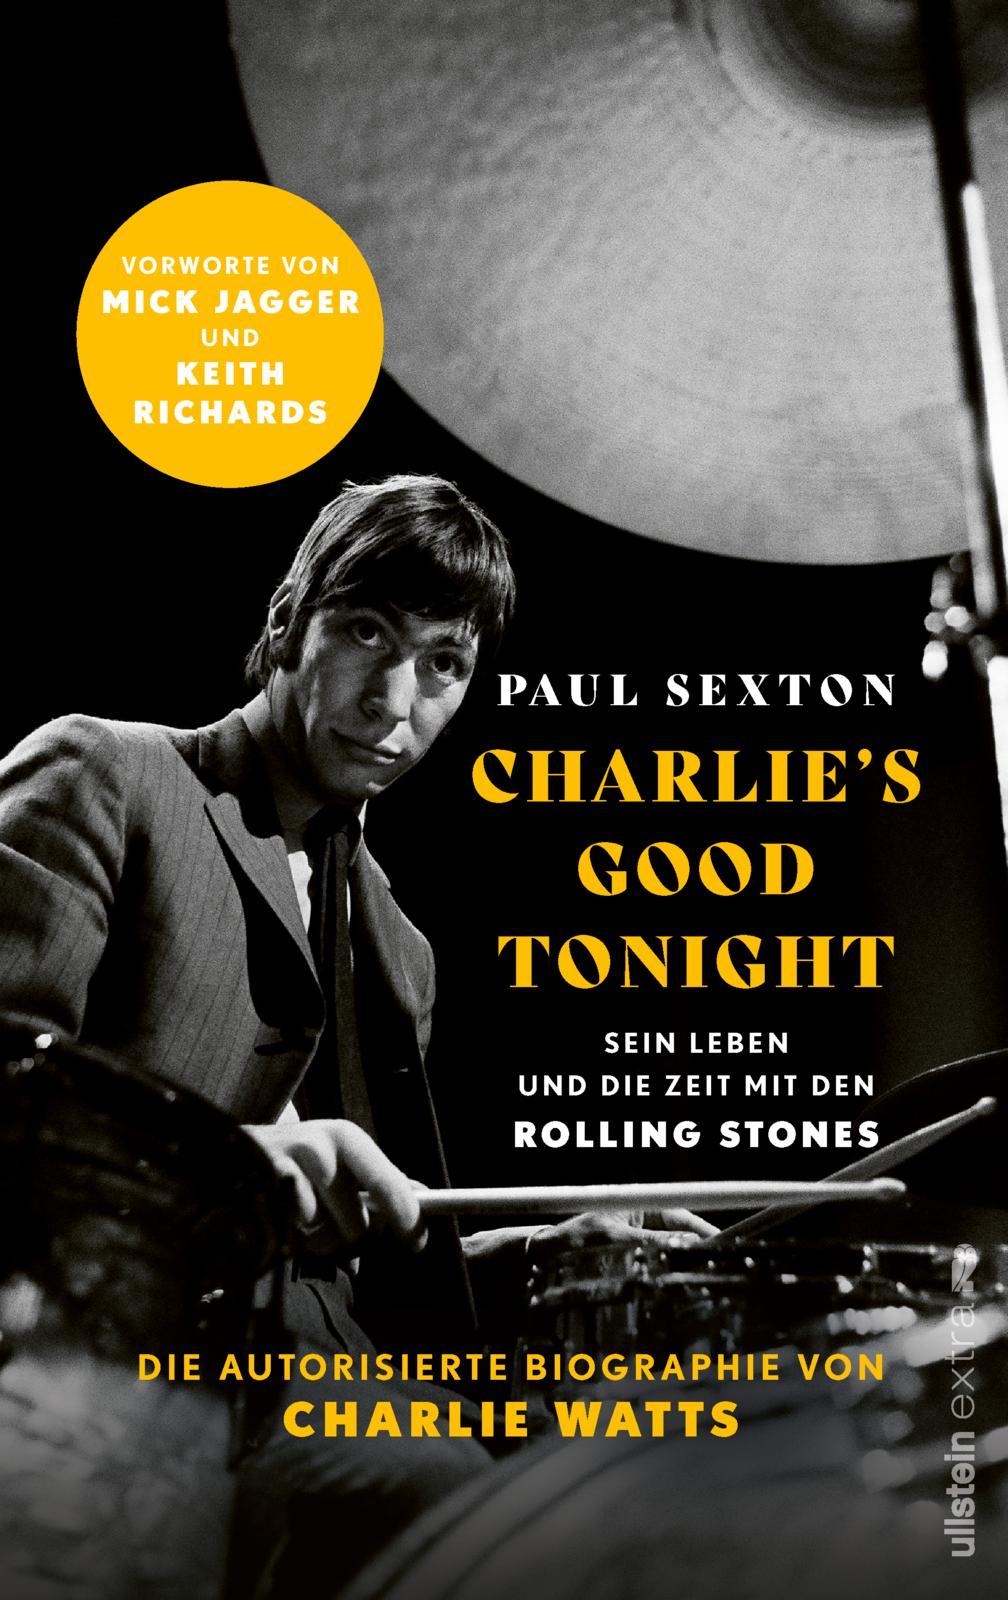 CHARLIE'S GOOD TONIGHT Die autorisierte Biographie von Charlie Watts | Der Drummer der Rolling Stones - Vorworte von Mick Jagger und Keith Richards